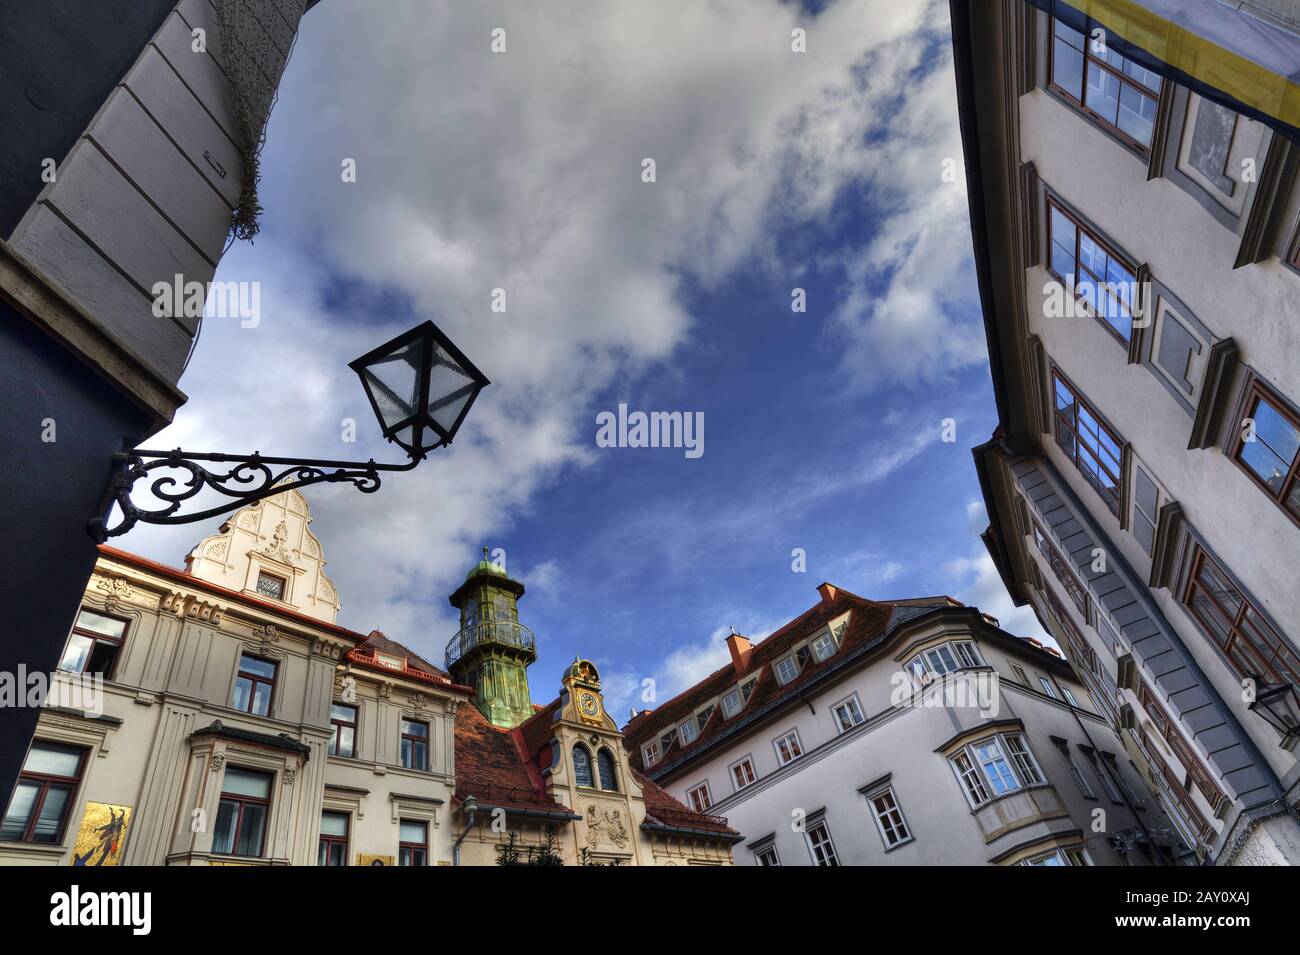 Grazer Glockenspiel am Glockenspielplatz, Graz, Styria, Austria, Europe / Grazer glockenspielon the Glockenspielplatz, Graz, Sty Stock Photo